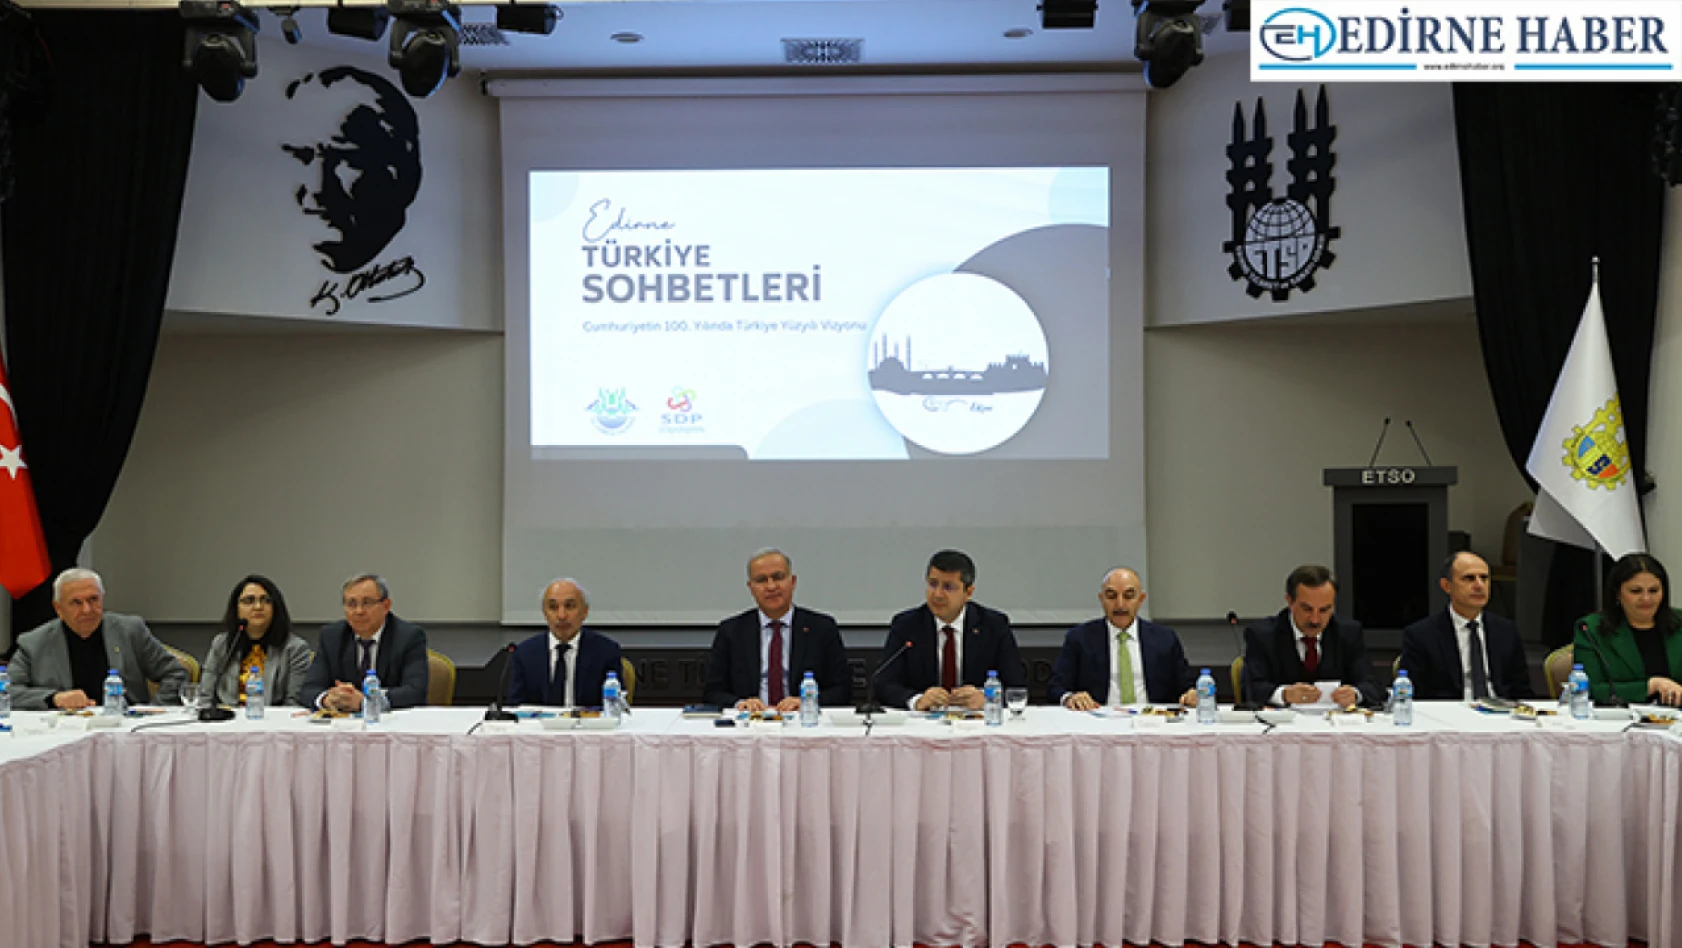 Edirne'de 'Türkiye Sohbetleri' toplantısı düzenlendi